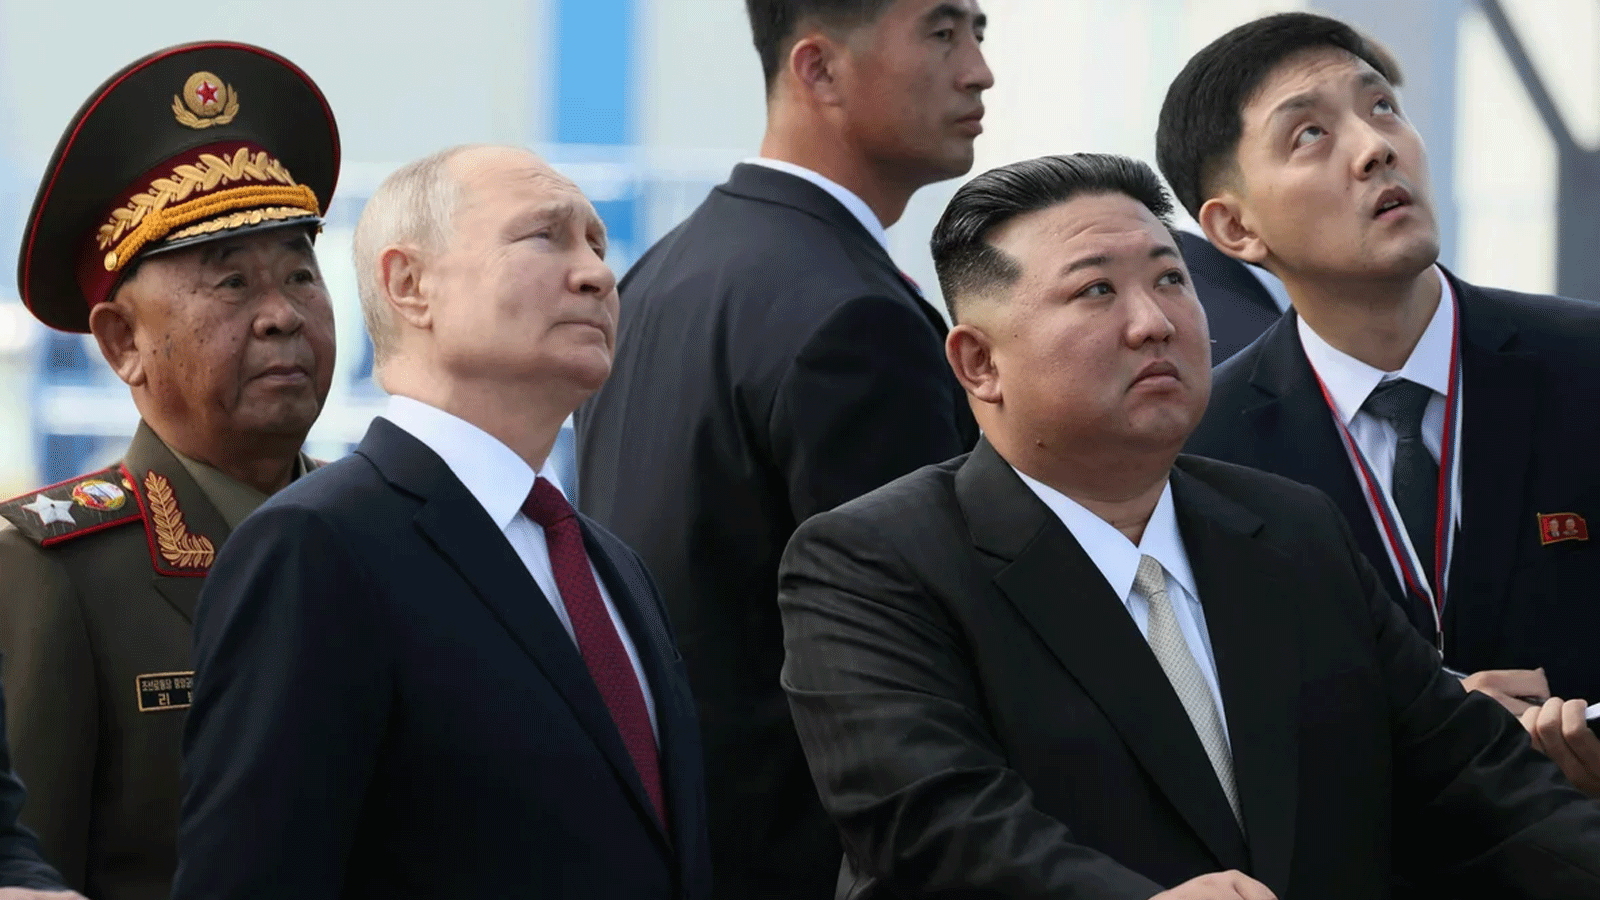 صورة وزعتها وكالة سبوتنيك، لزيارة الرئيس الروسي فلاديمير بوتين والزعيم الكوري الشمالي كيم جونغ أون إلى قاعدة فوستوشني الفضائية في منطقة أمور يوم الأربعاء 13 ايلول\سبتمبر2023